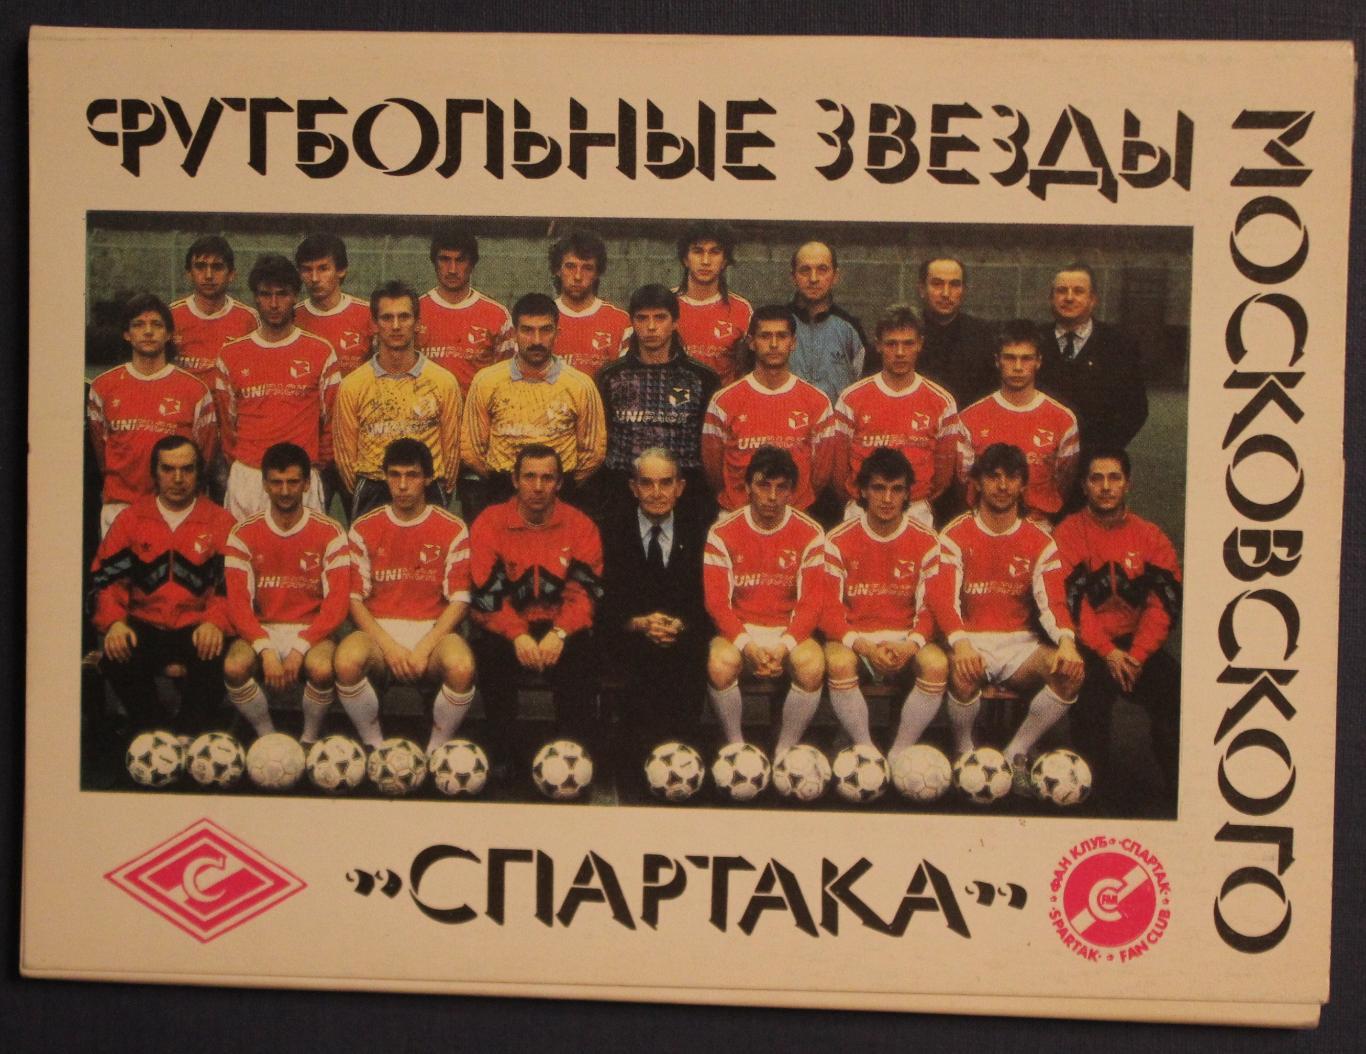 Набор открыток Футбольные звезды московского Спартака